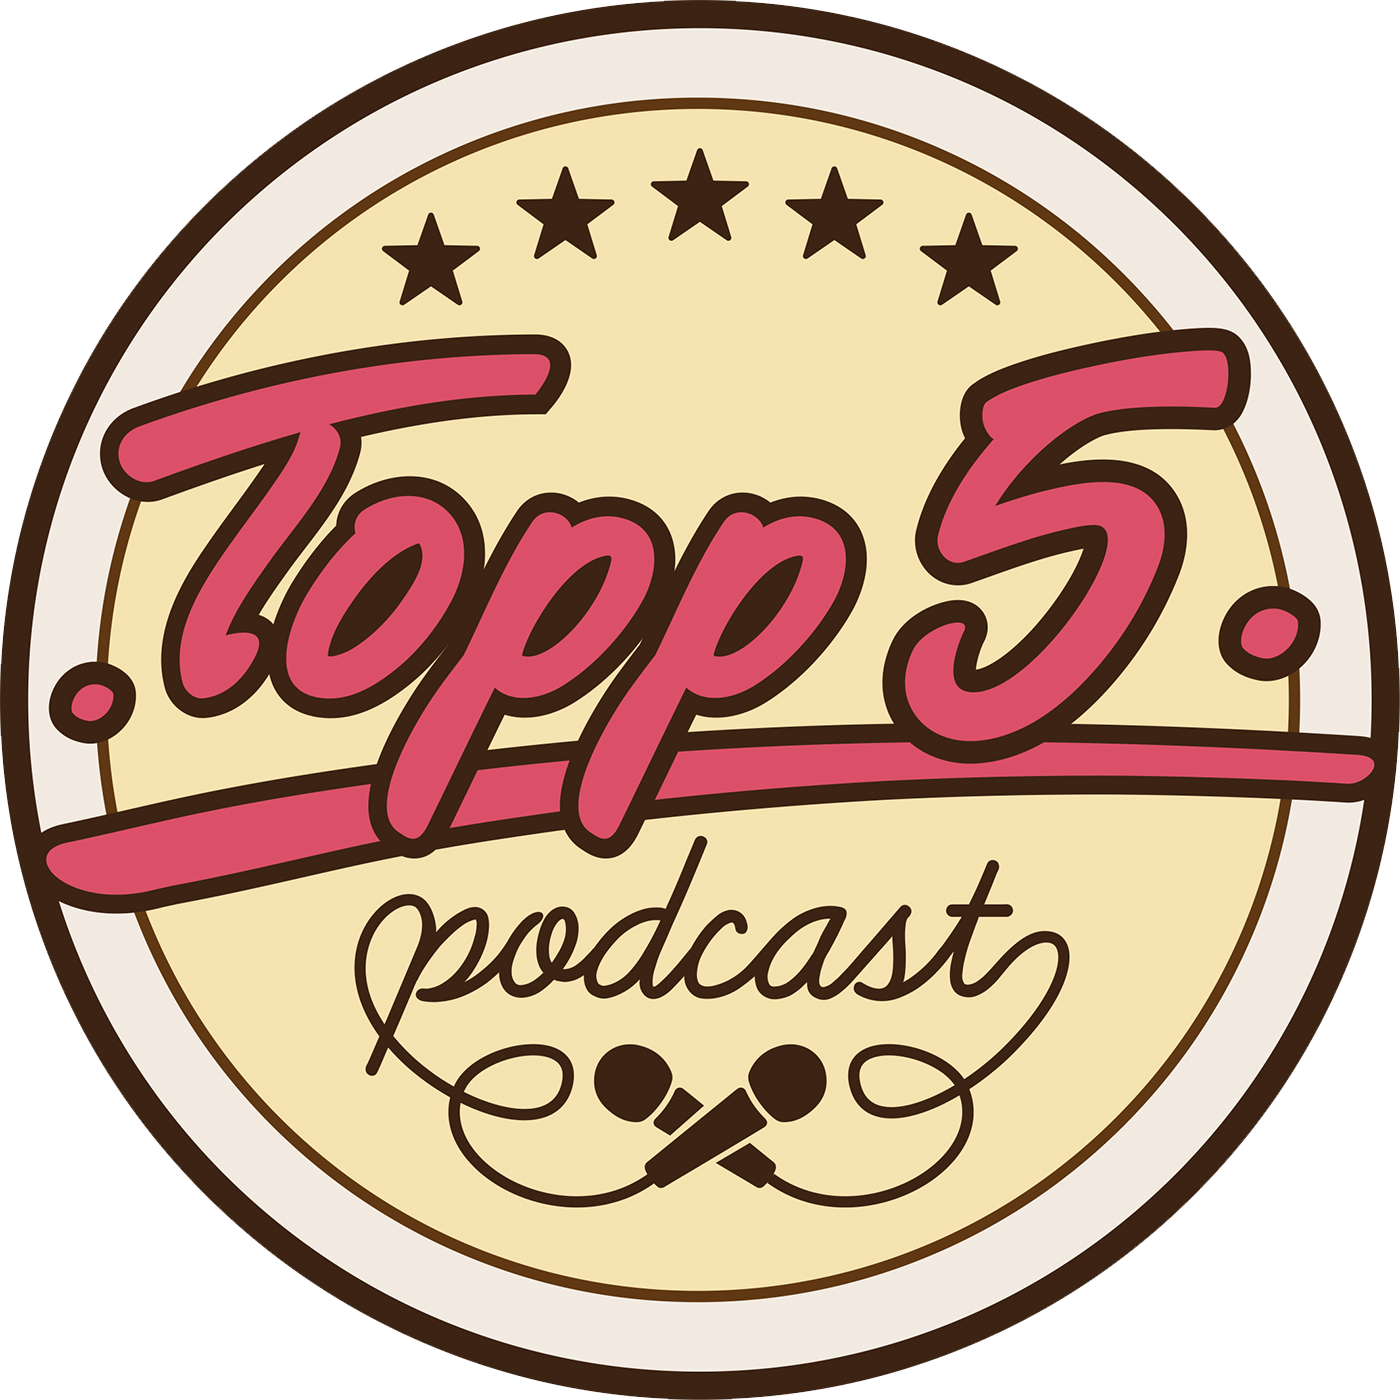 Topp 5 Podcast